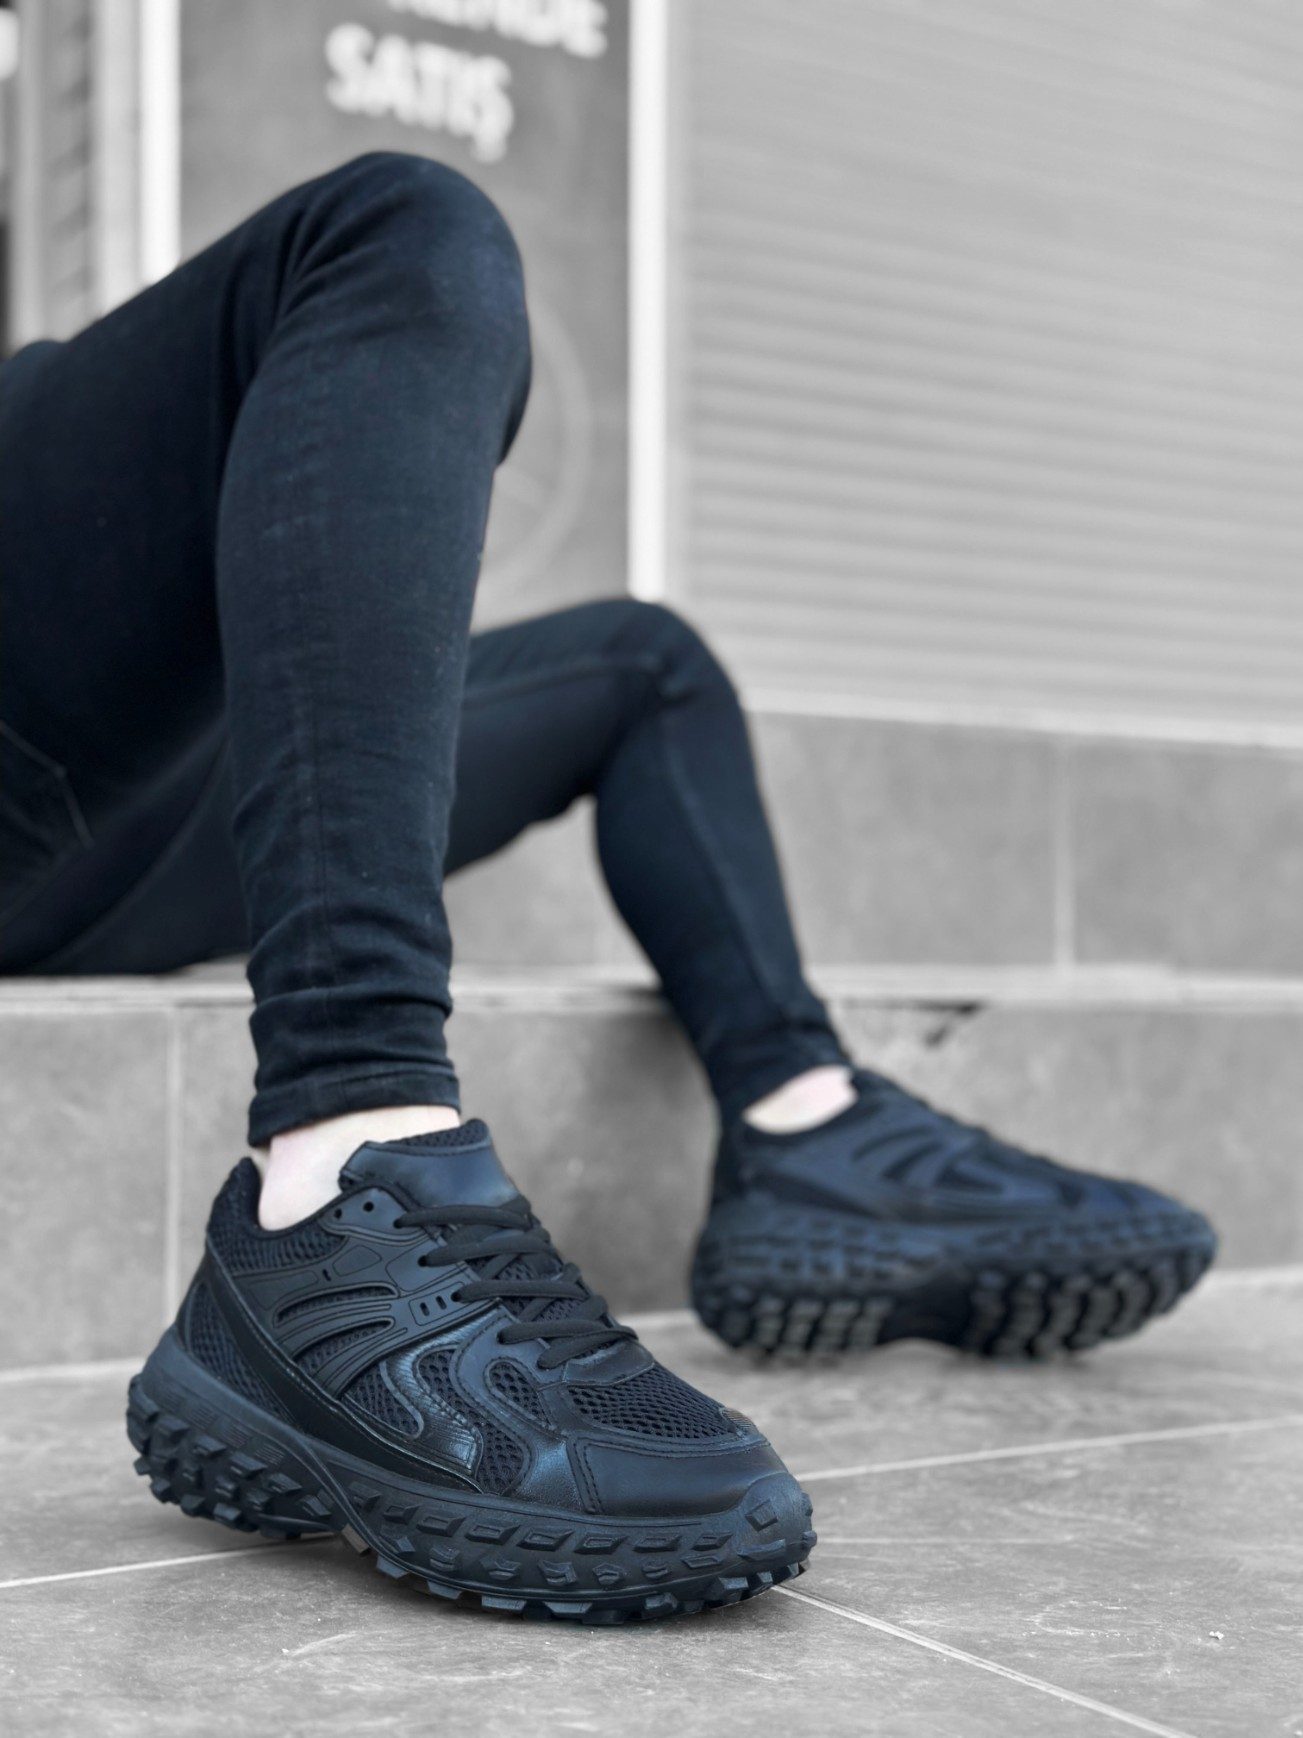 CLZ946 Tarz Sneakers Ithal Siyah Fileli Rahat Taban Spor Ayakkabısı